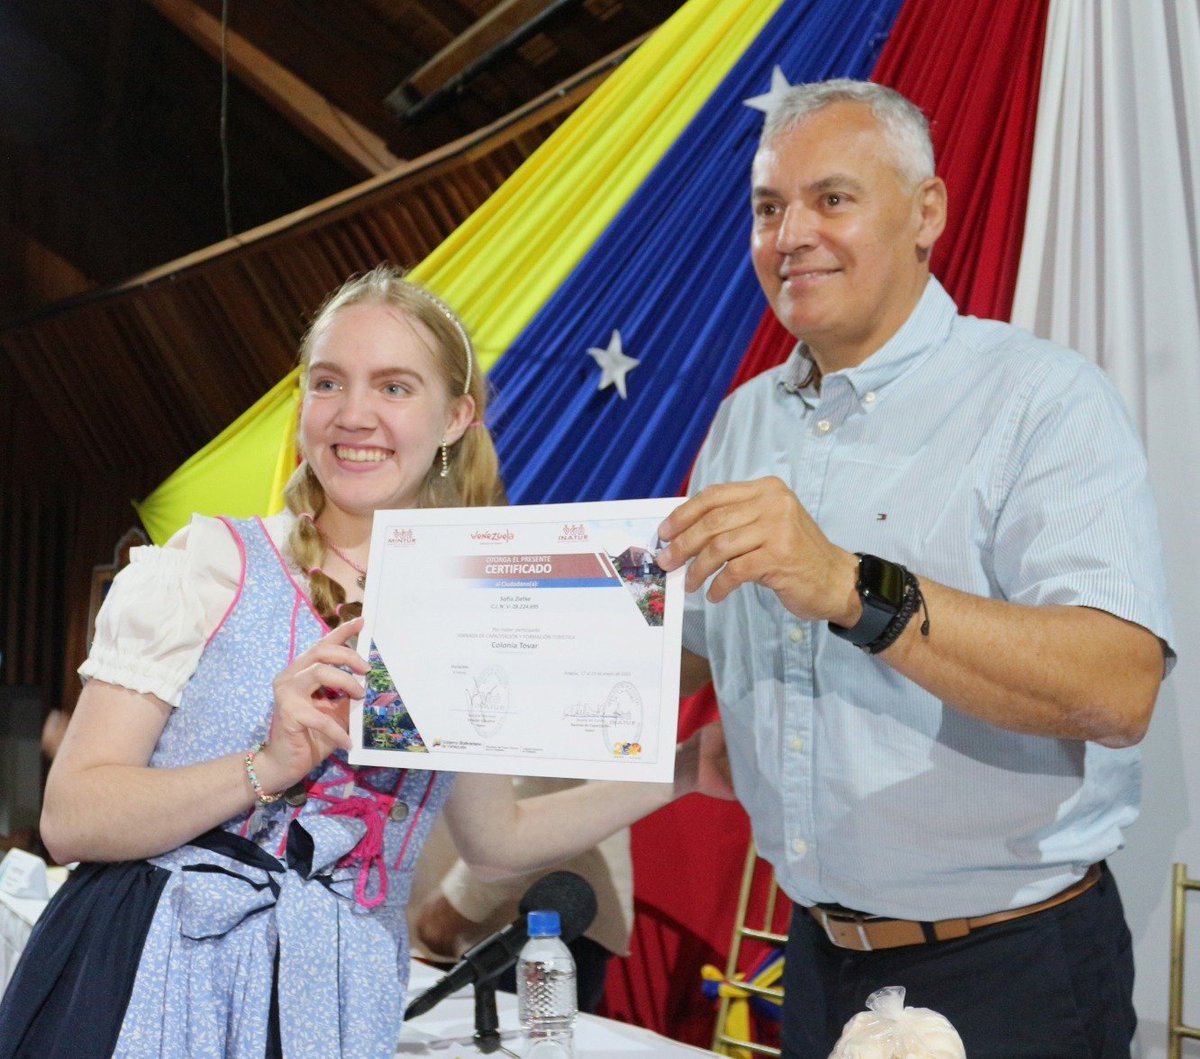 Ayer #22Mar el ministro @AliErnesto32 junto al alcalde del municipio Tovar, #DarwinCáceres, hizo entrega de 70 certificados a estudiantes de la #Unefa, #PrestadoresDeServiciosTurísticos y Comunidad Organizada de la #ColoniaTovar, estado Aragua.

@NicolasMaduro